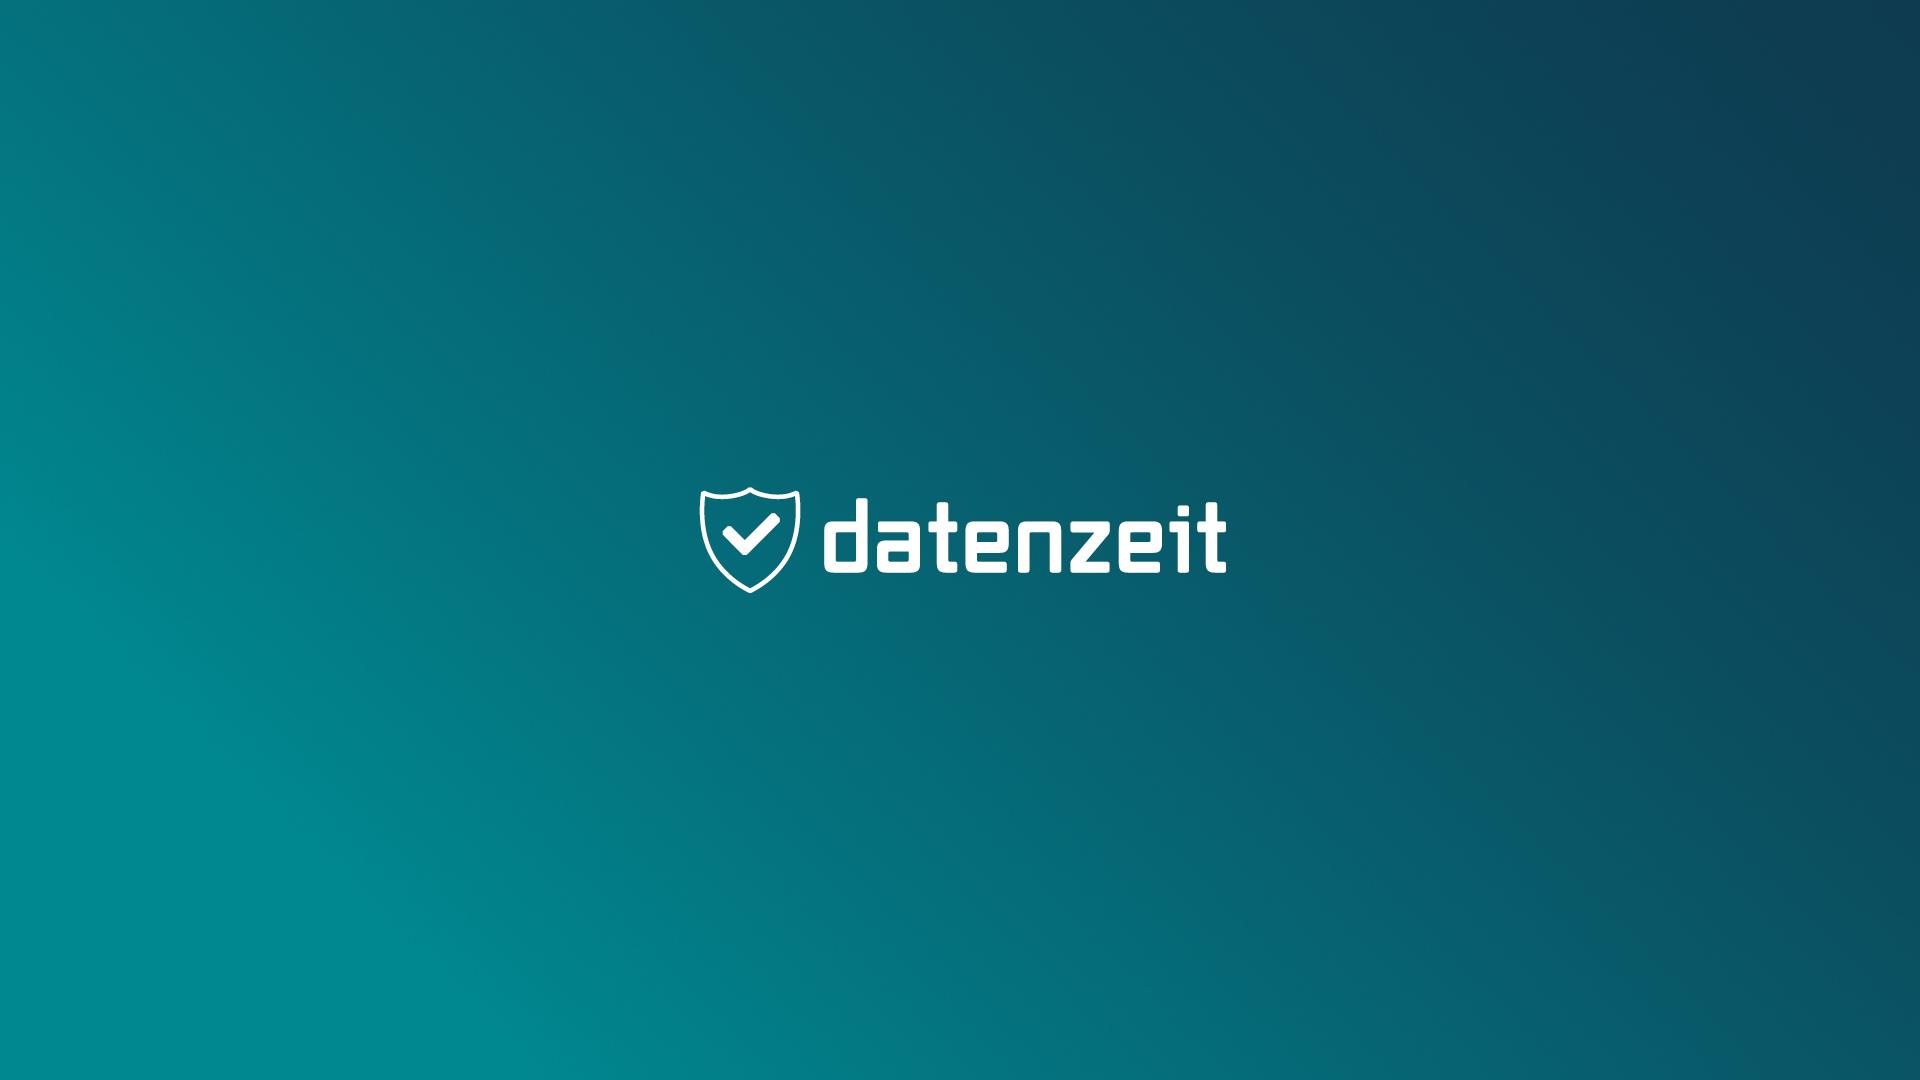 datenzeit / startup from Wuppertal / Background